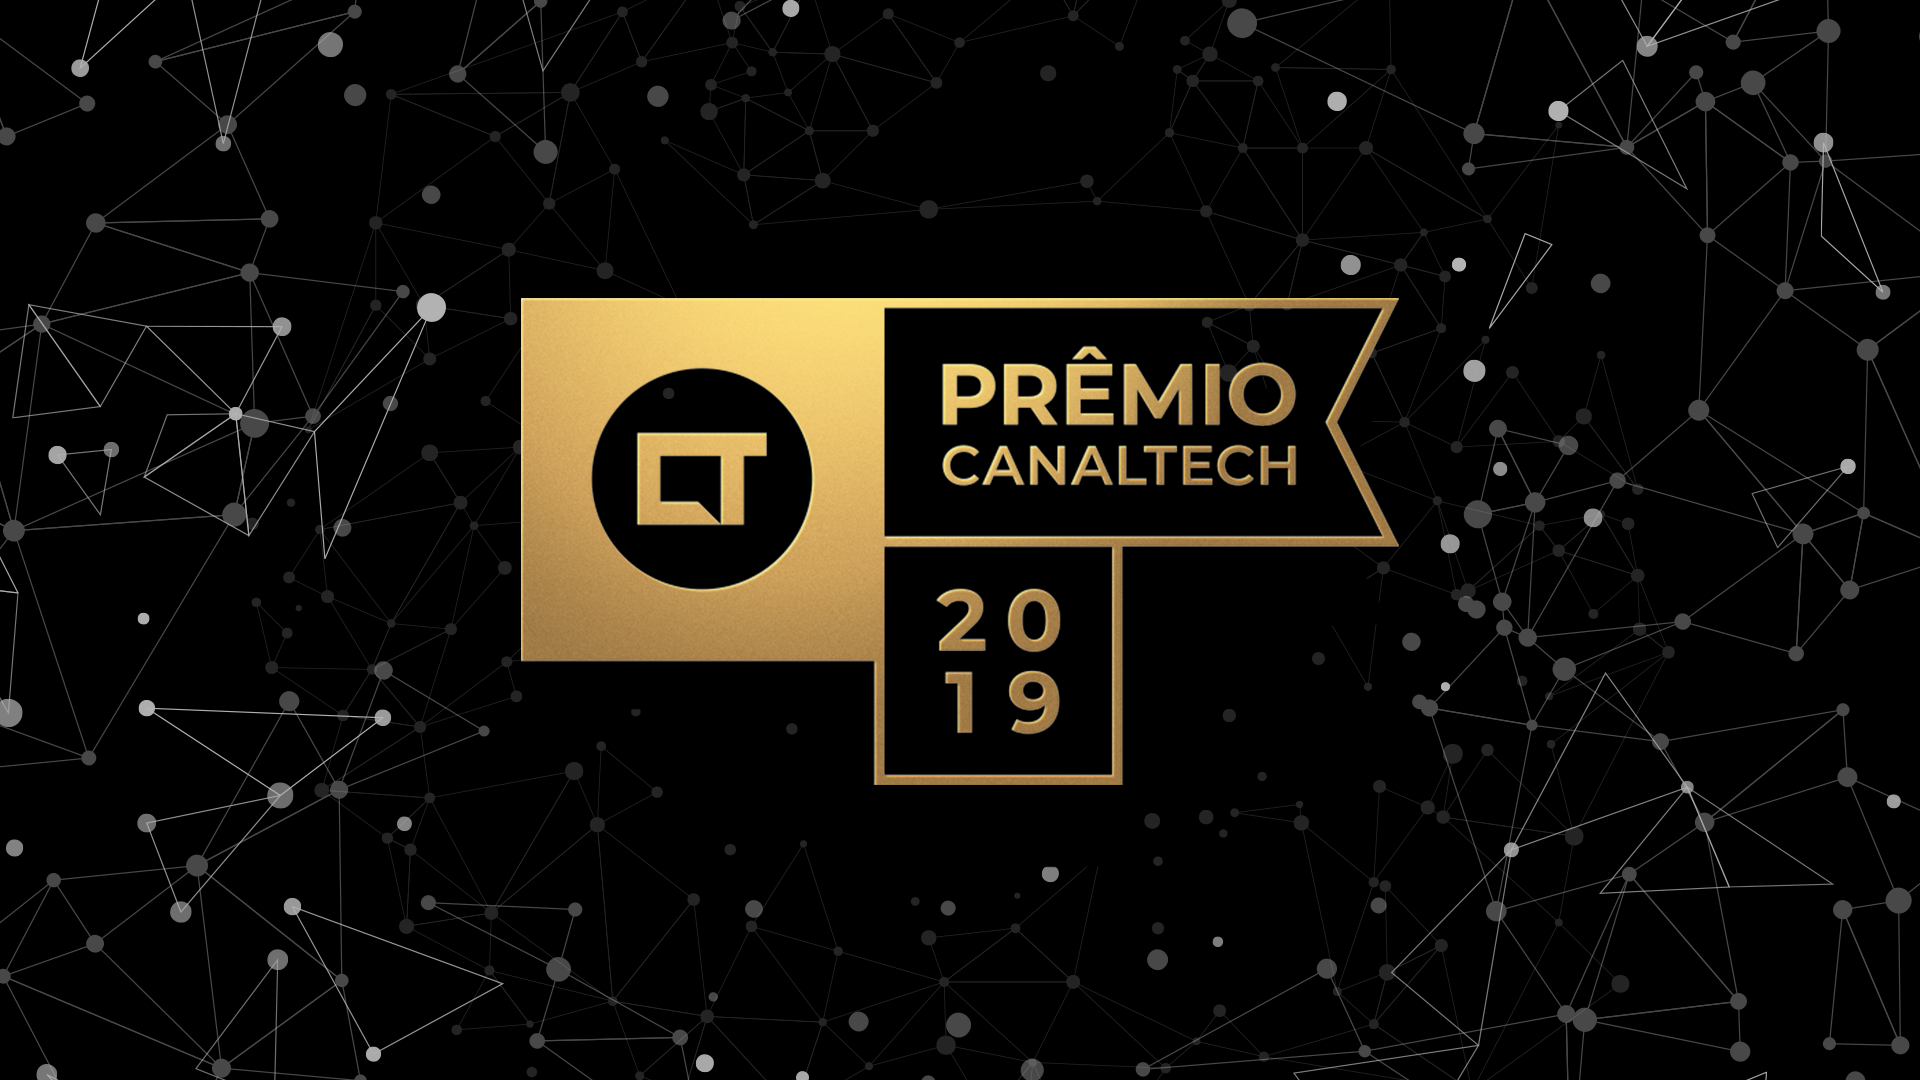 Prêmio Canaltech 2019: “Oscar” de Tecnologia será realizado no dia 27